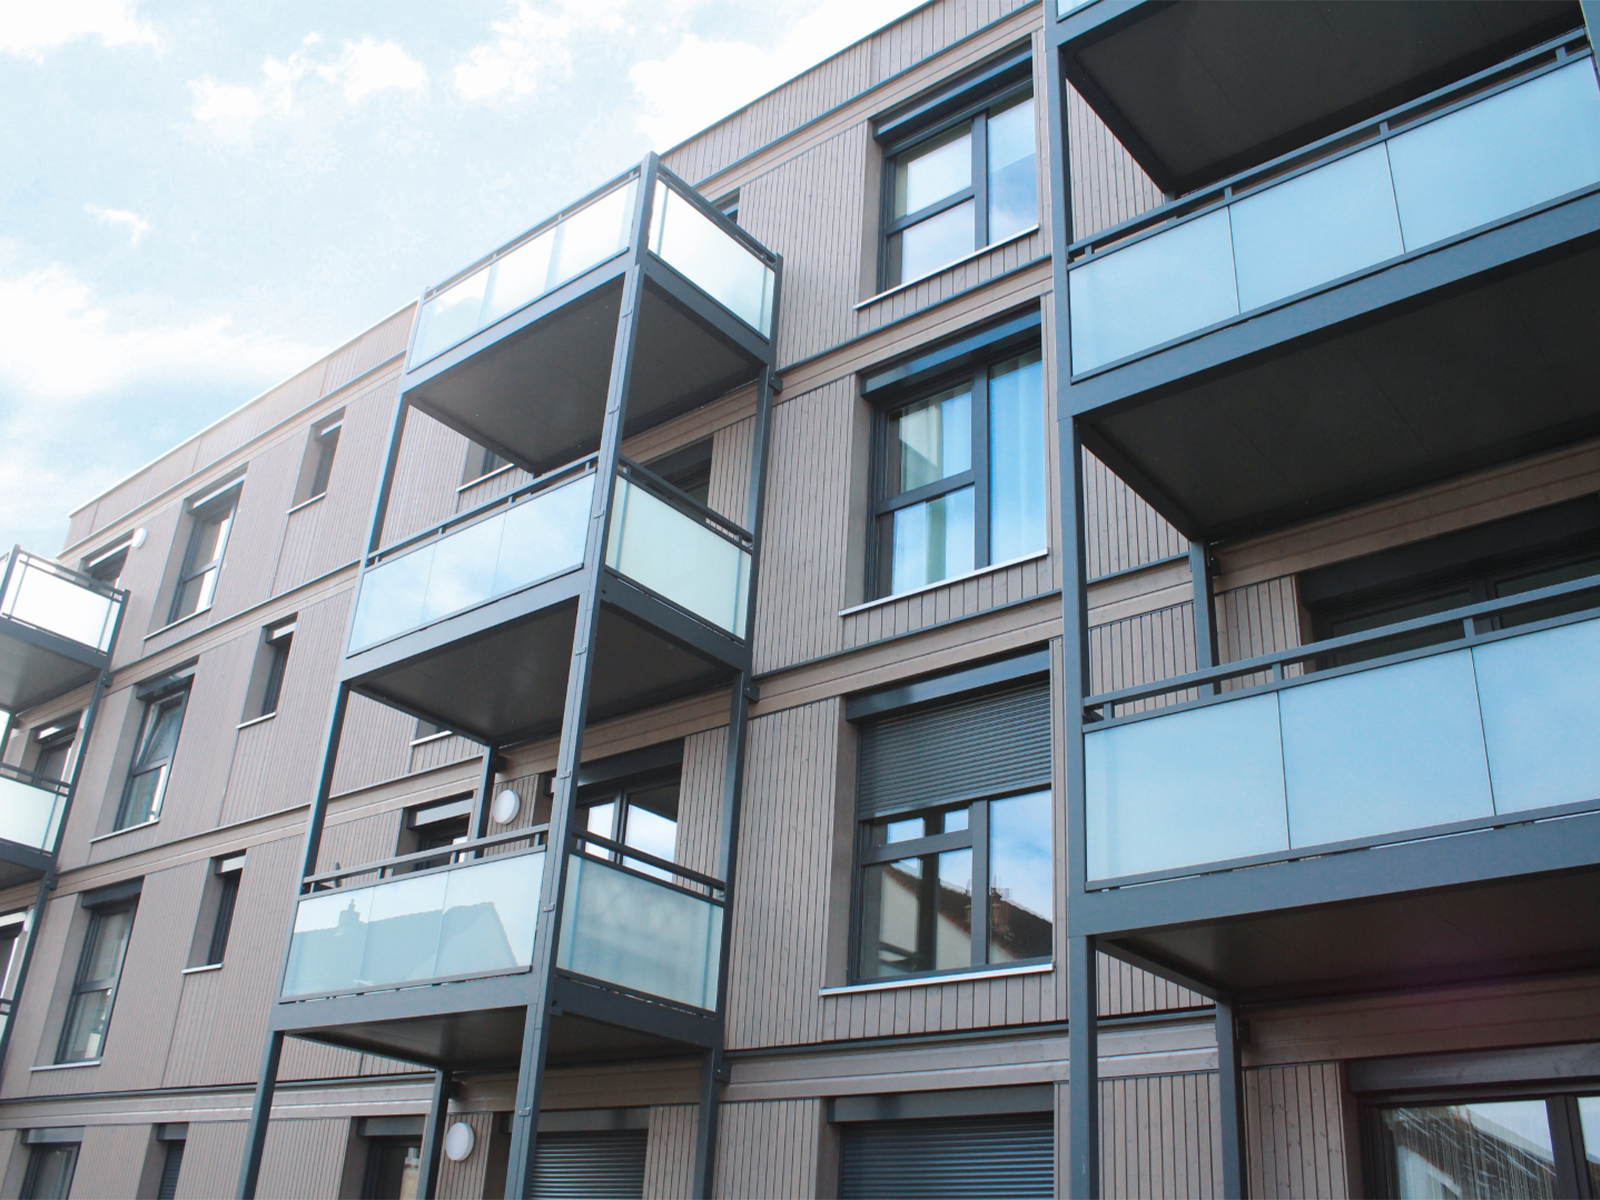 3 Mehrfamilienhäuser in Hanau mit ca. 6.300&nbspm2 Dennert DX-Decke